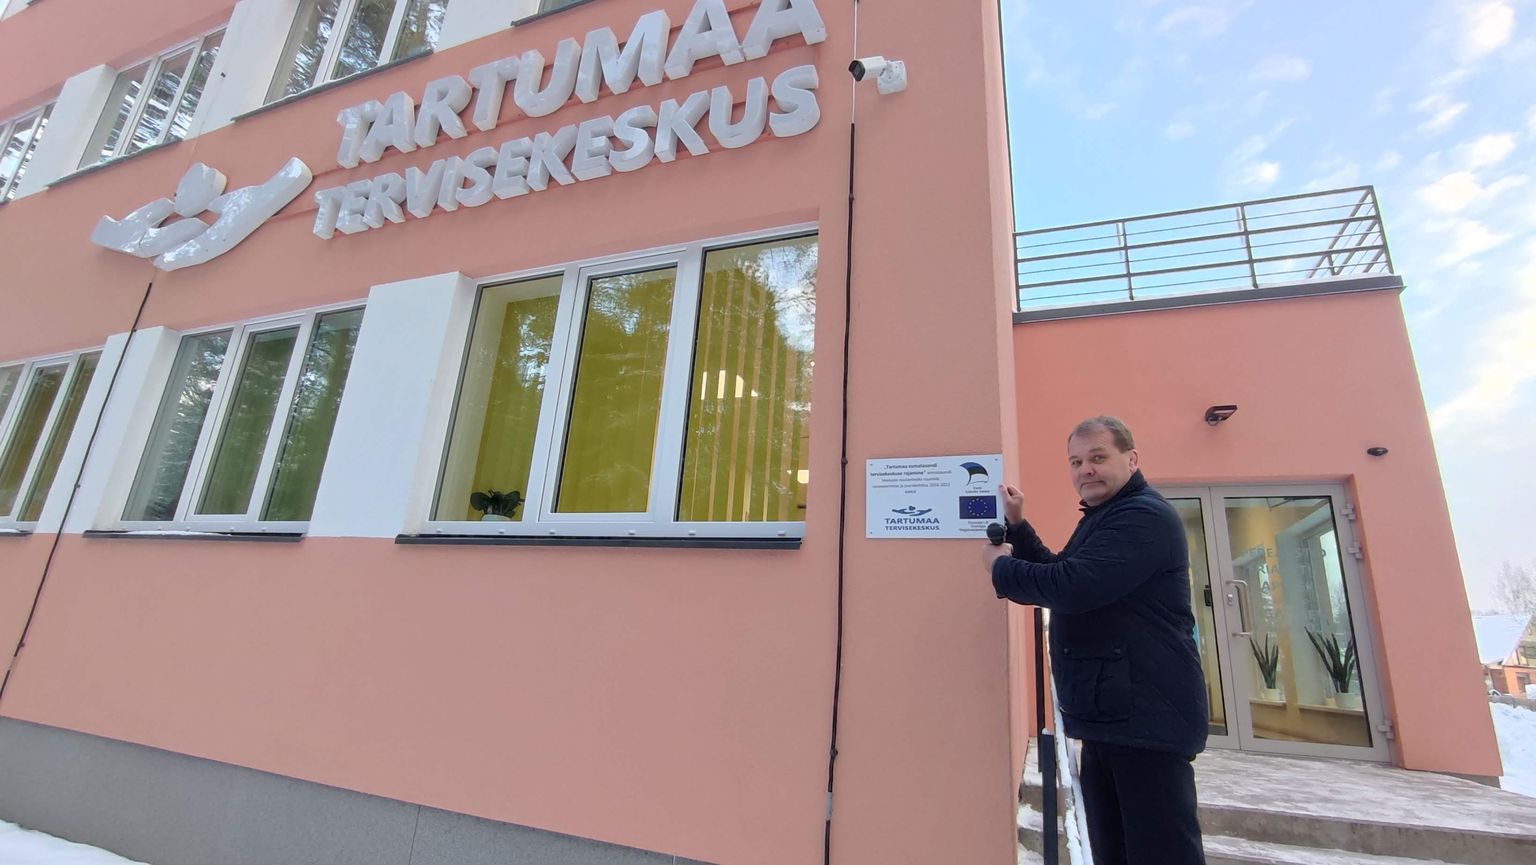 Пеэтер Лаасик, заведующий Эльваской больницы, прикрепляет табличку с именами доноров на стену открывшегося Тартумааского центра здоровья.